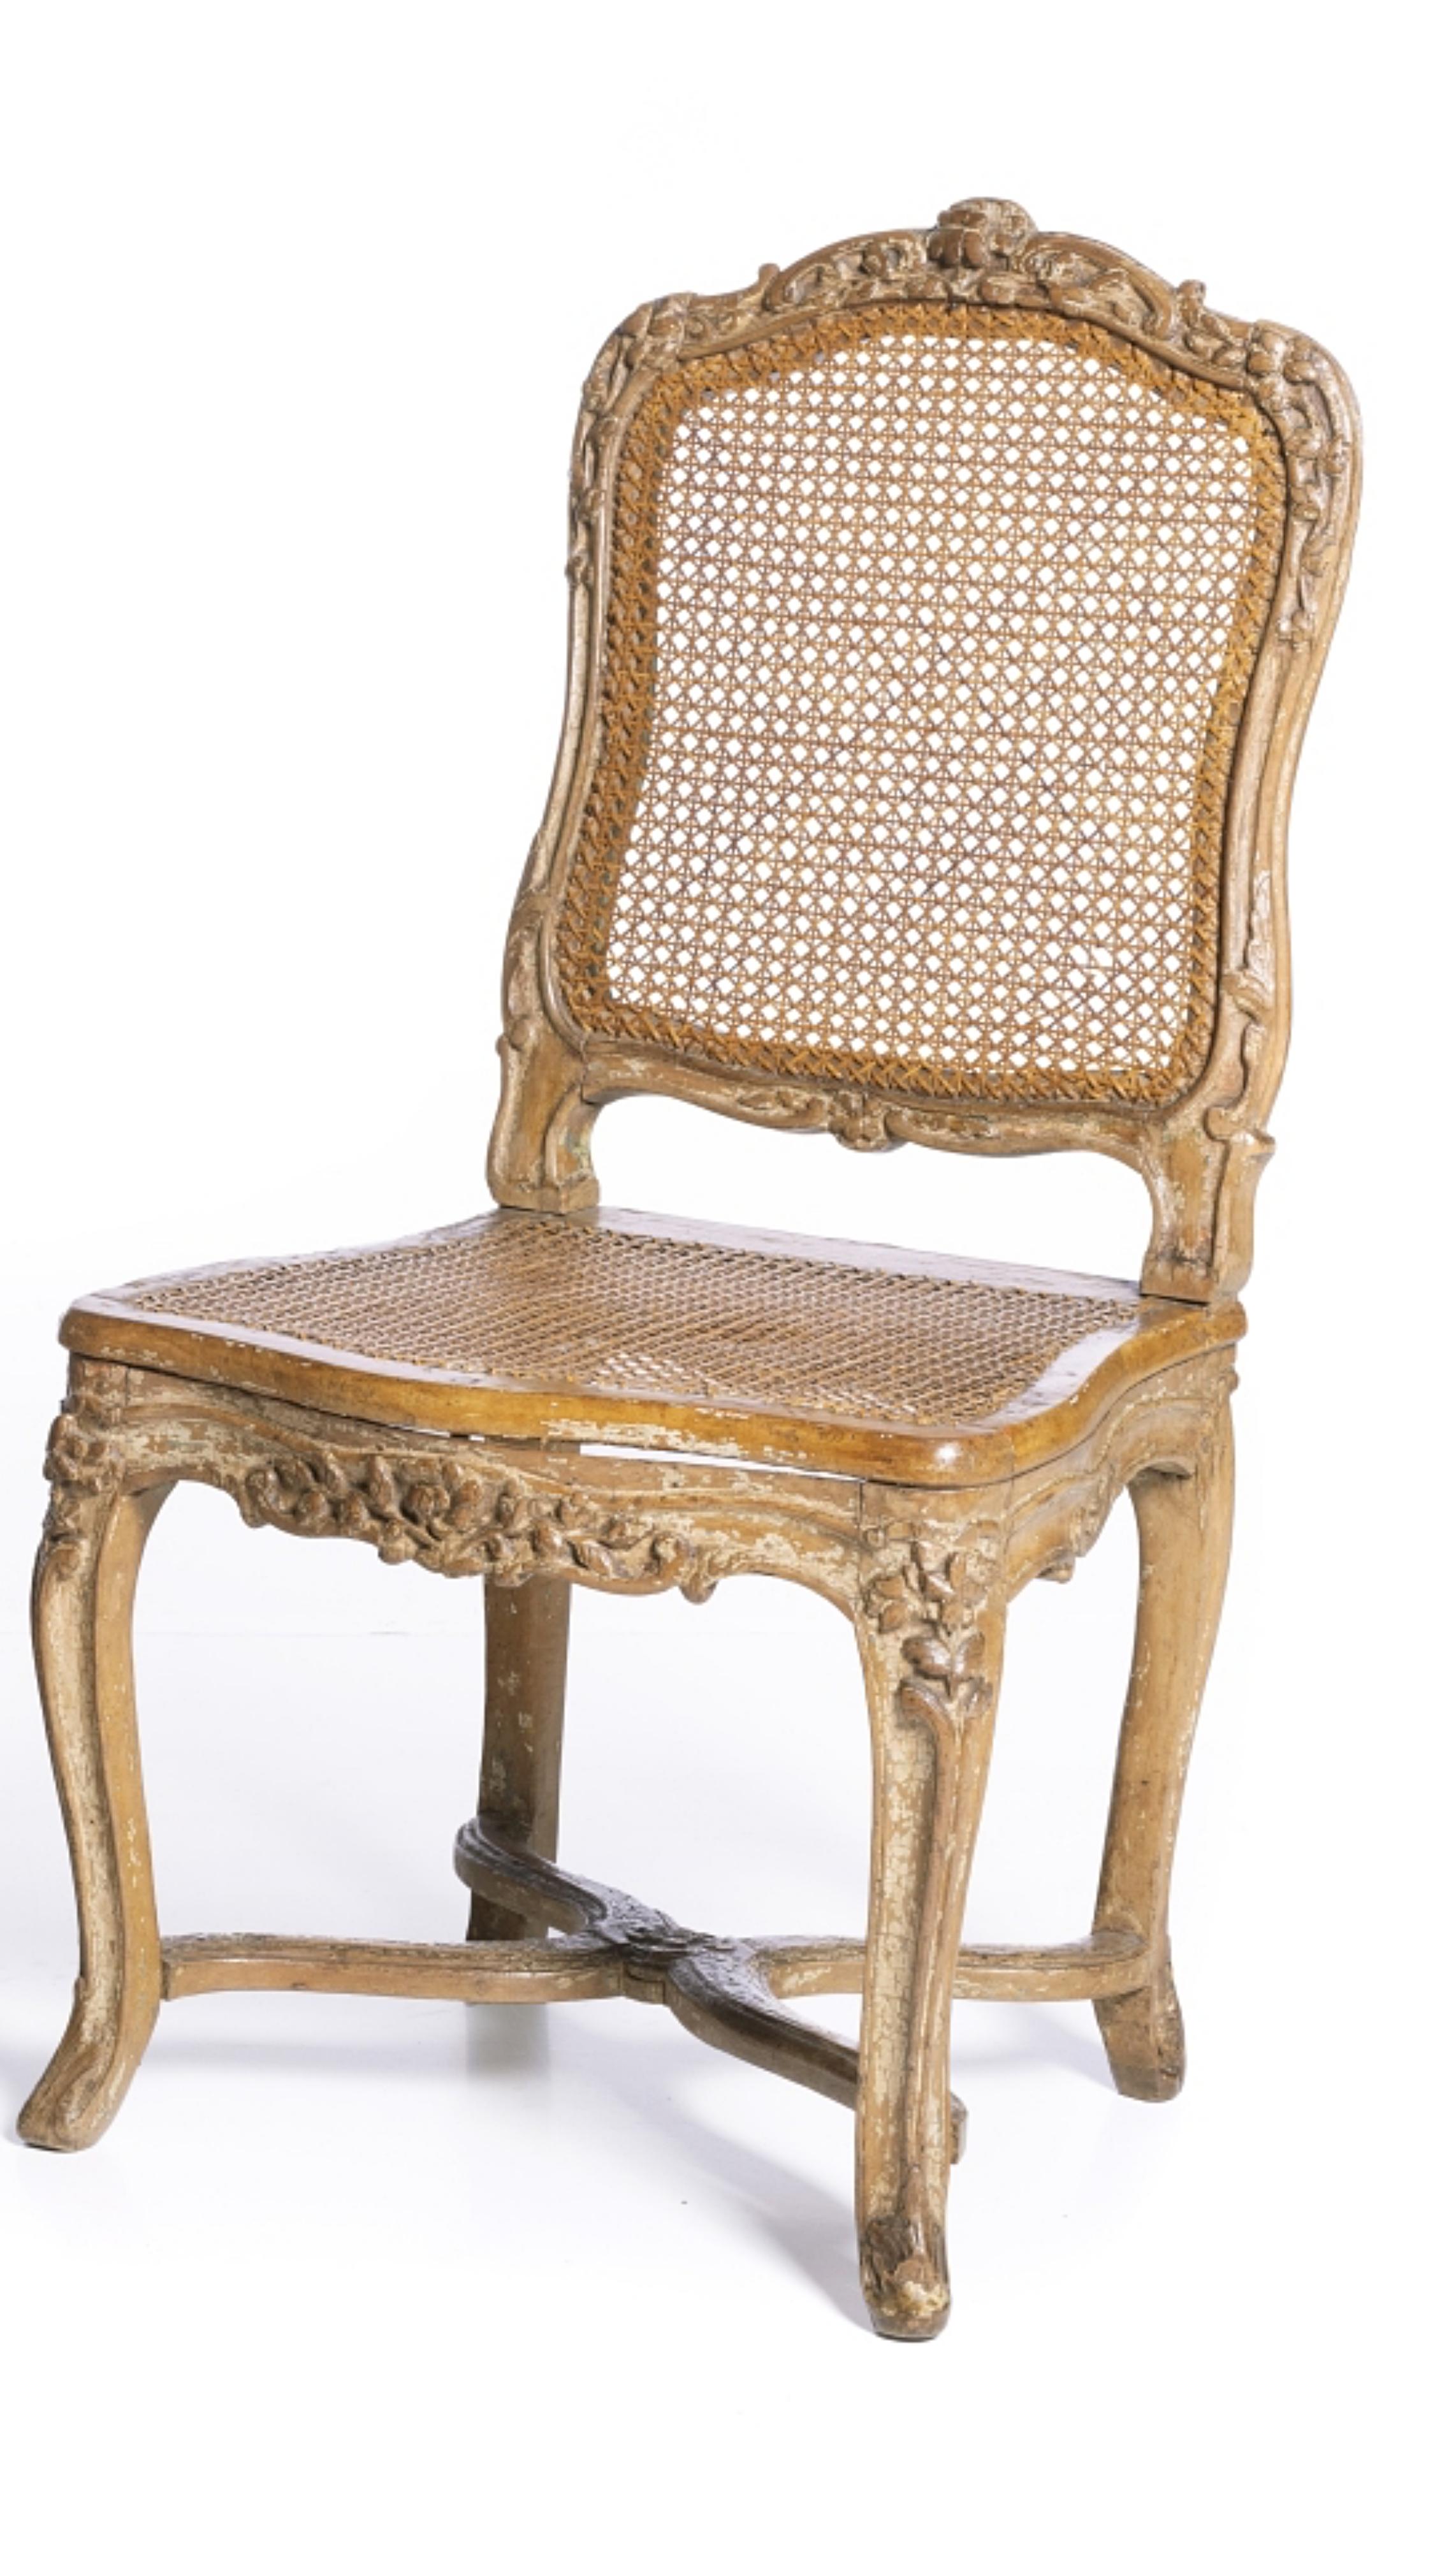 Importante paire de chaises Louis XV

Français, du 18ème siècle
en bois de noyer, avec des sculptures représentant des motifs végétaux.
Dossiers et sièges en paille.
Défauts et traces de polychromie.
Dim. : 92 x 48,5 x 43,5 cm